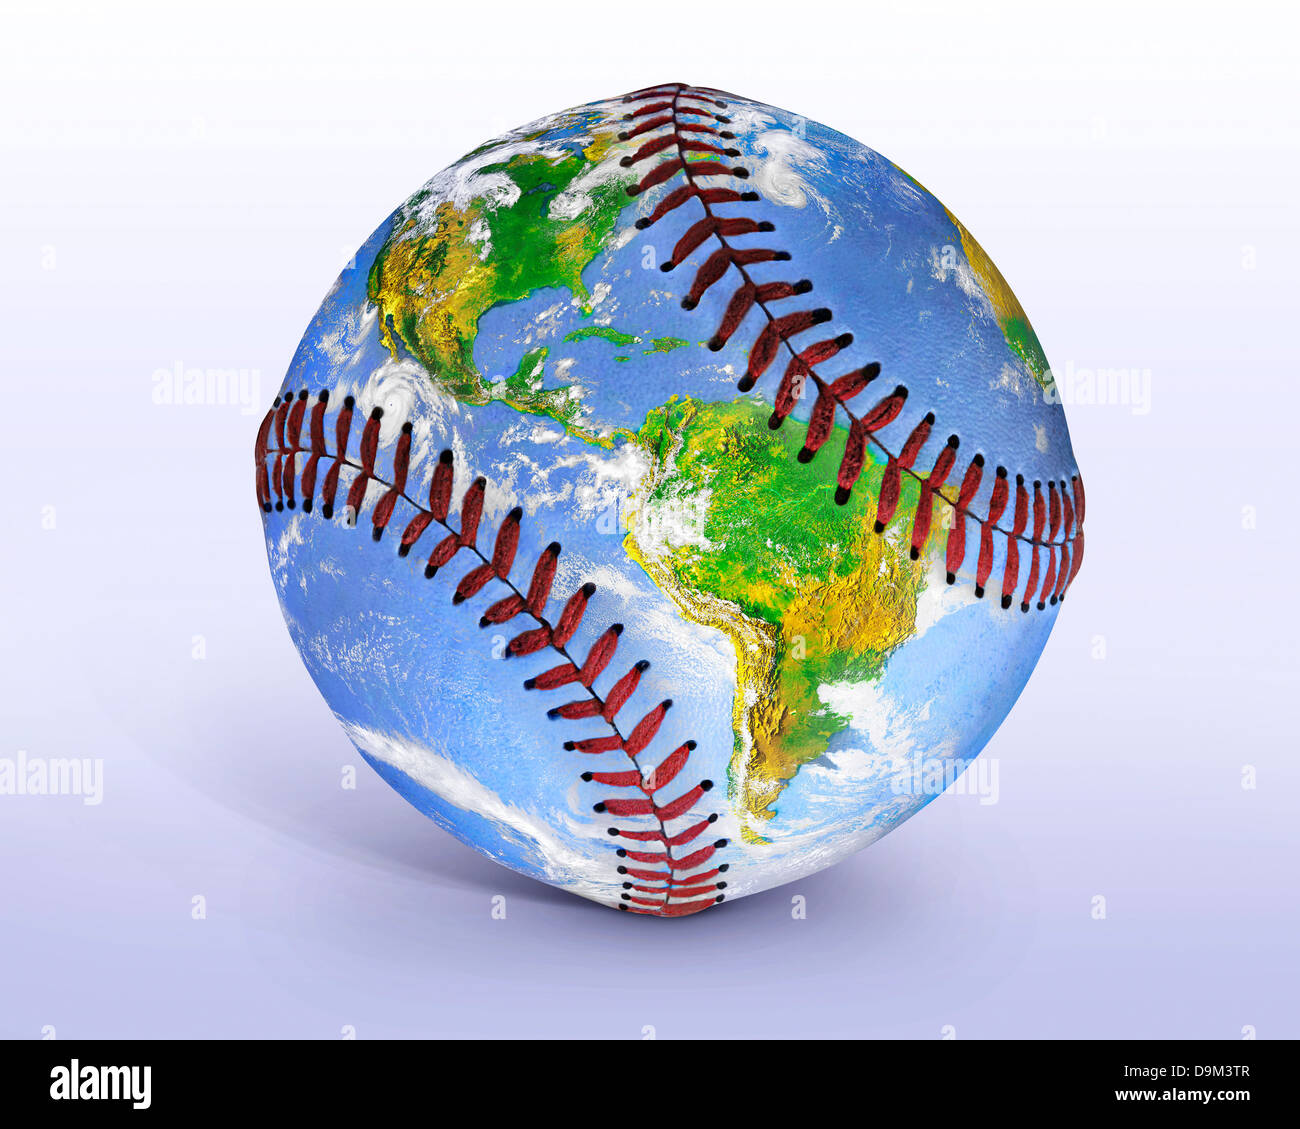 Une image de la Terre à partir de l'espace apparemment peint sur un base-ball, Photo Illustration, Ce fichier a un chemin de détourage Banque D'Images